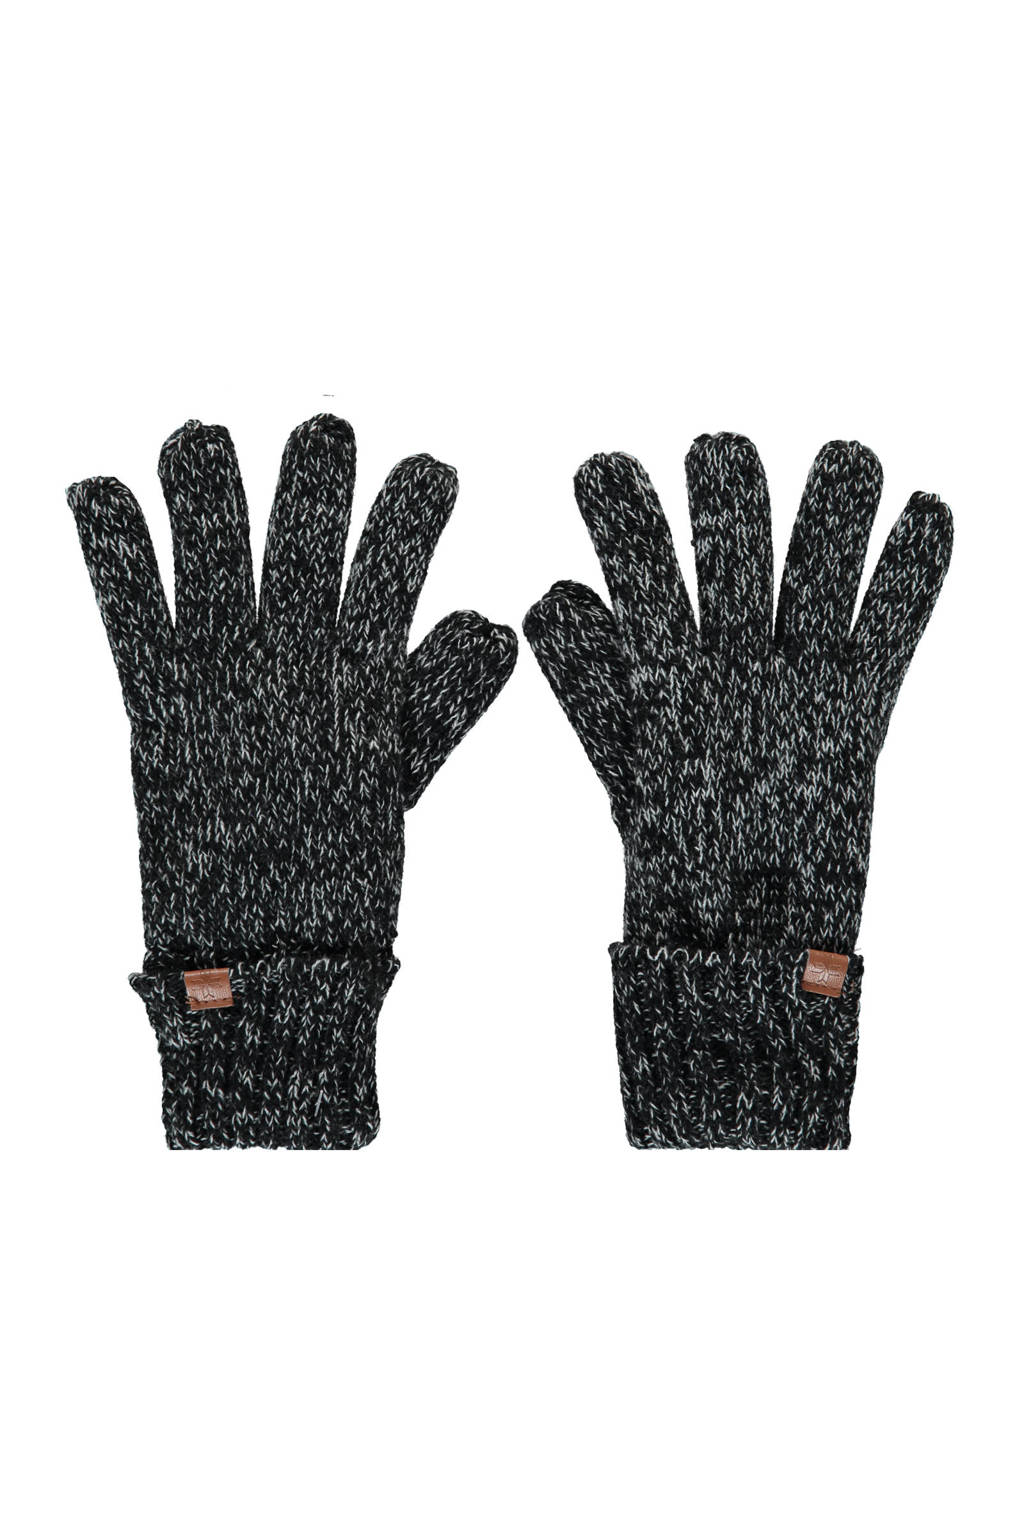 handschoenen gemeleerd zwart